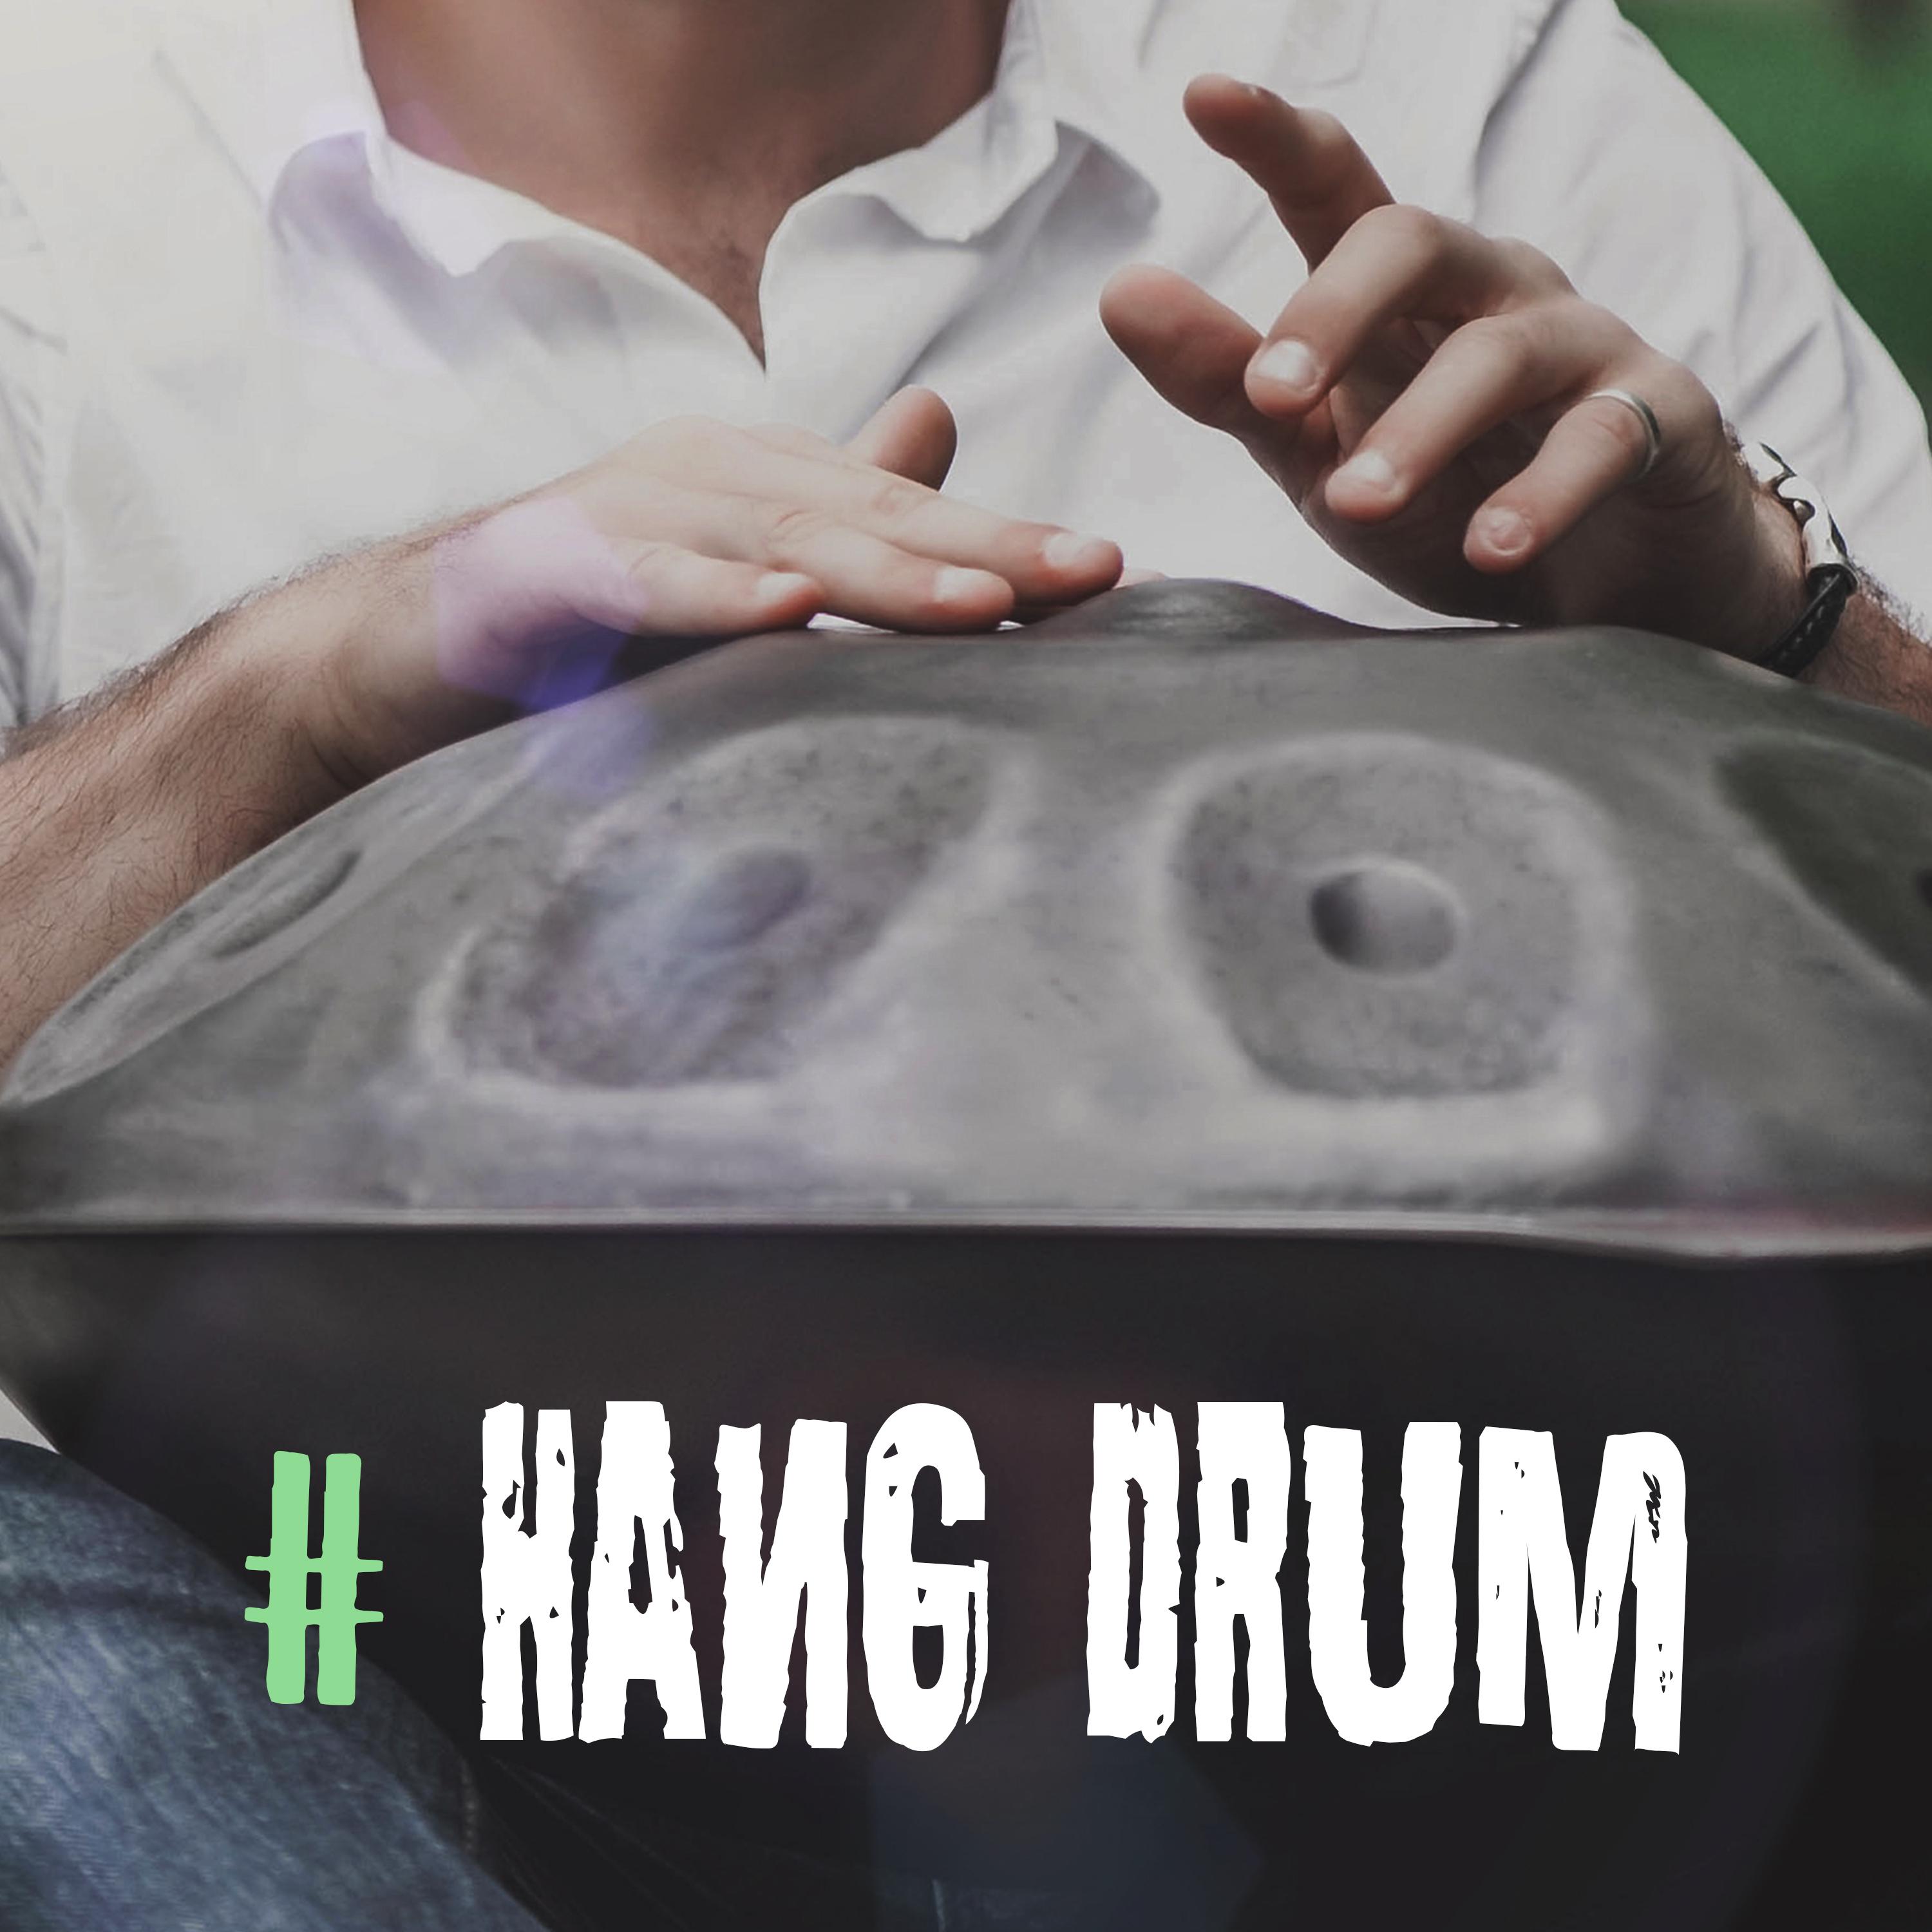 Drum Beat